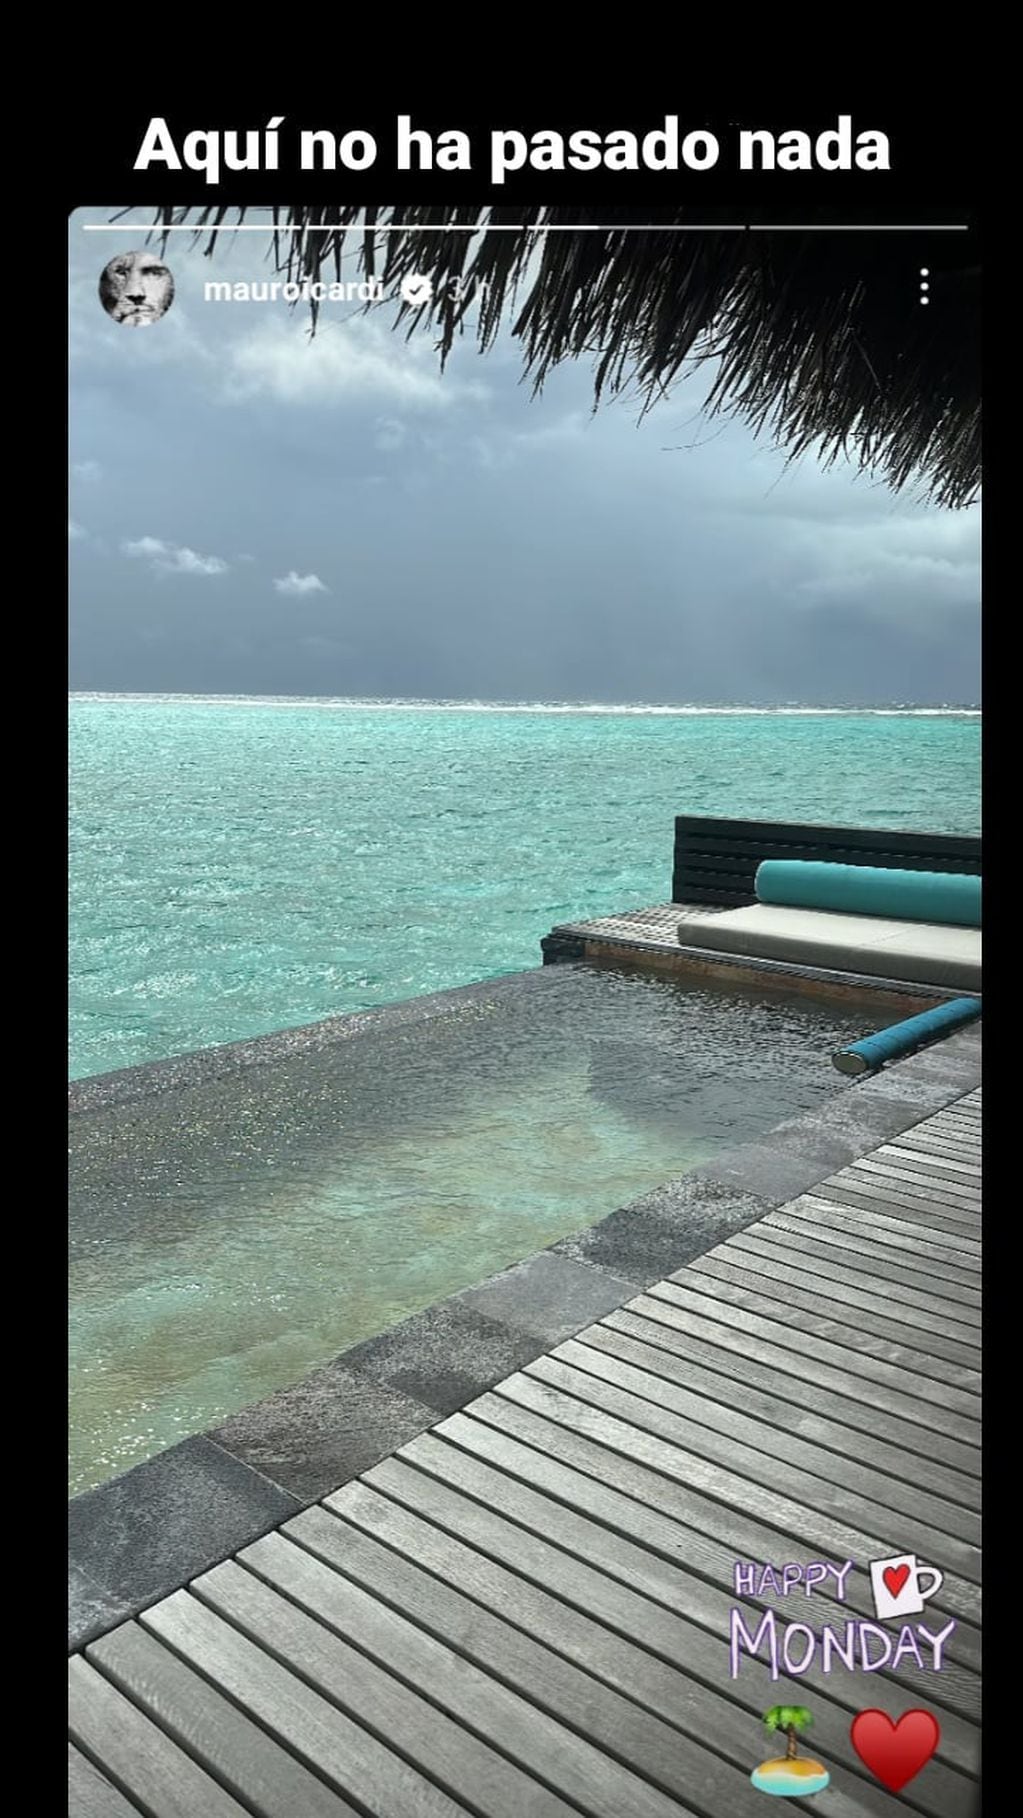 Wanda Nara y Mauro Icardi compartieron historias que confirman que están juntos en Maldivas (Historias de Instagram).